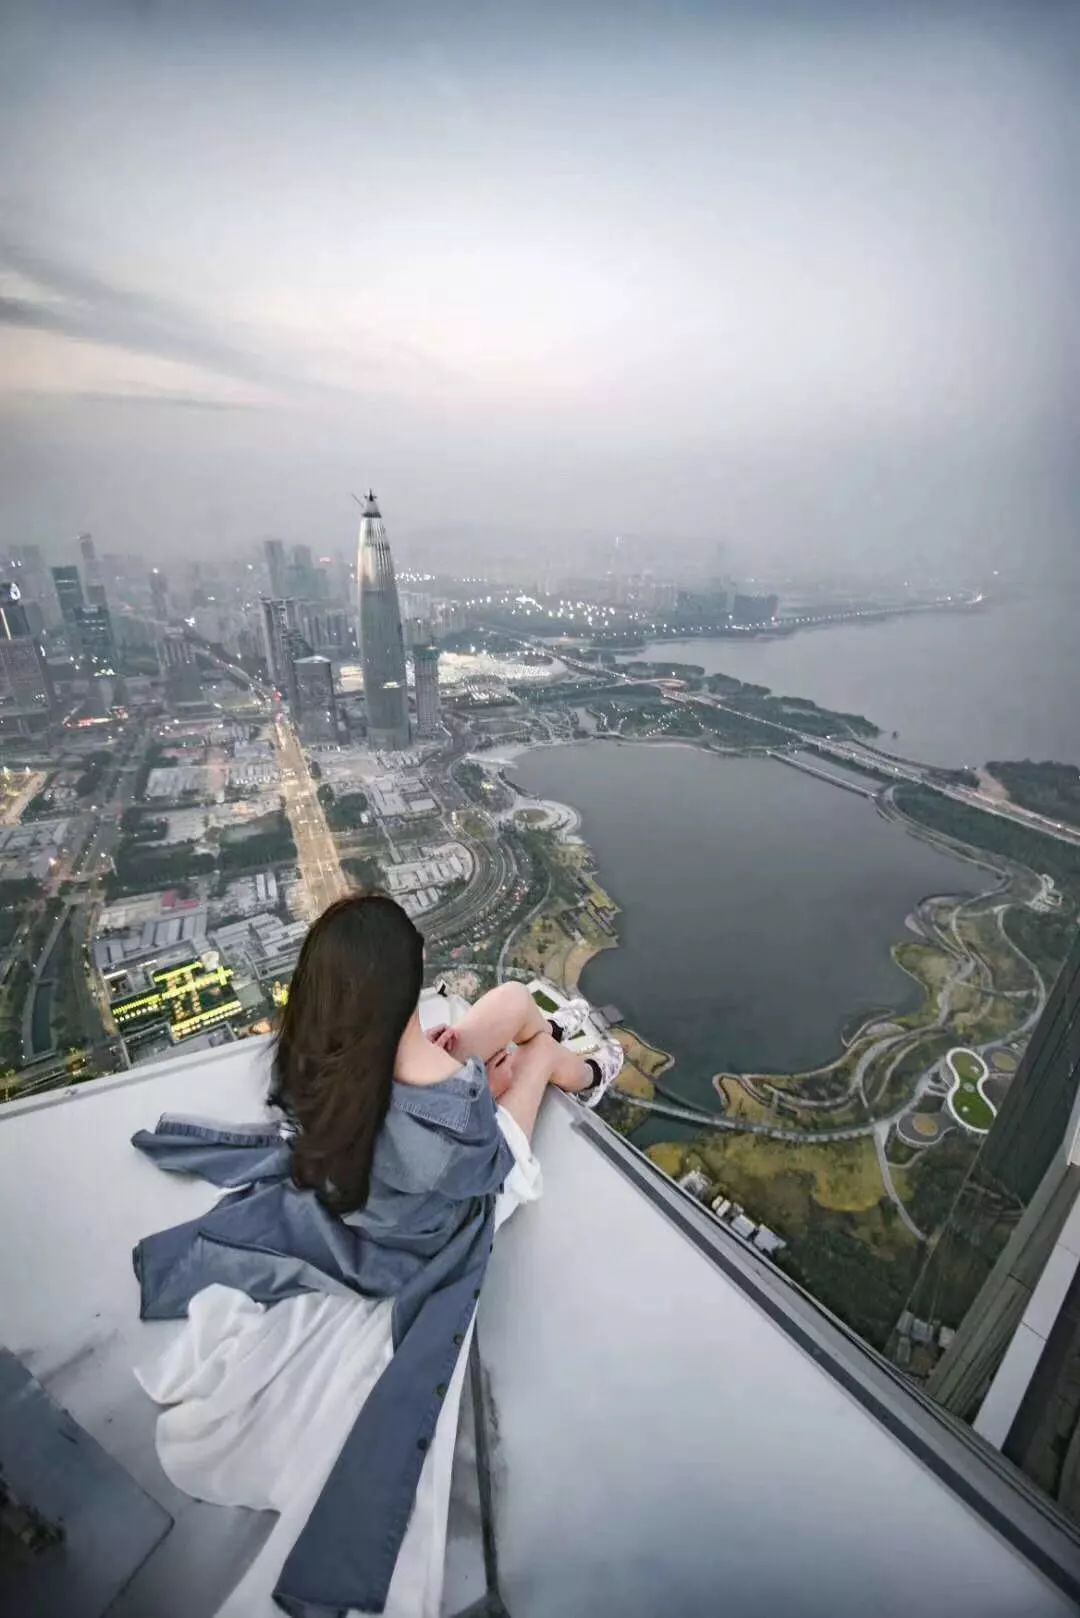 坐在深圳湾1号楼顶看风景的人(图片来源于网络)